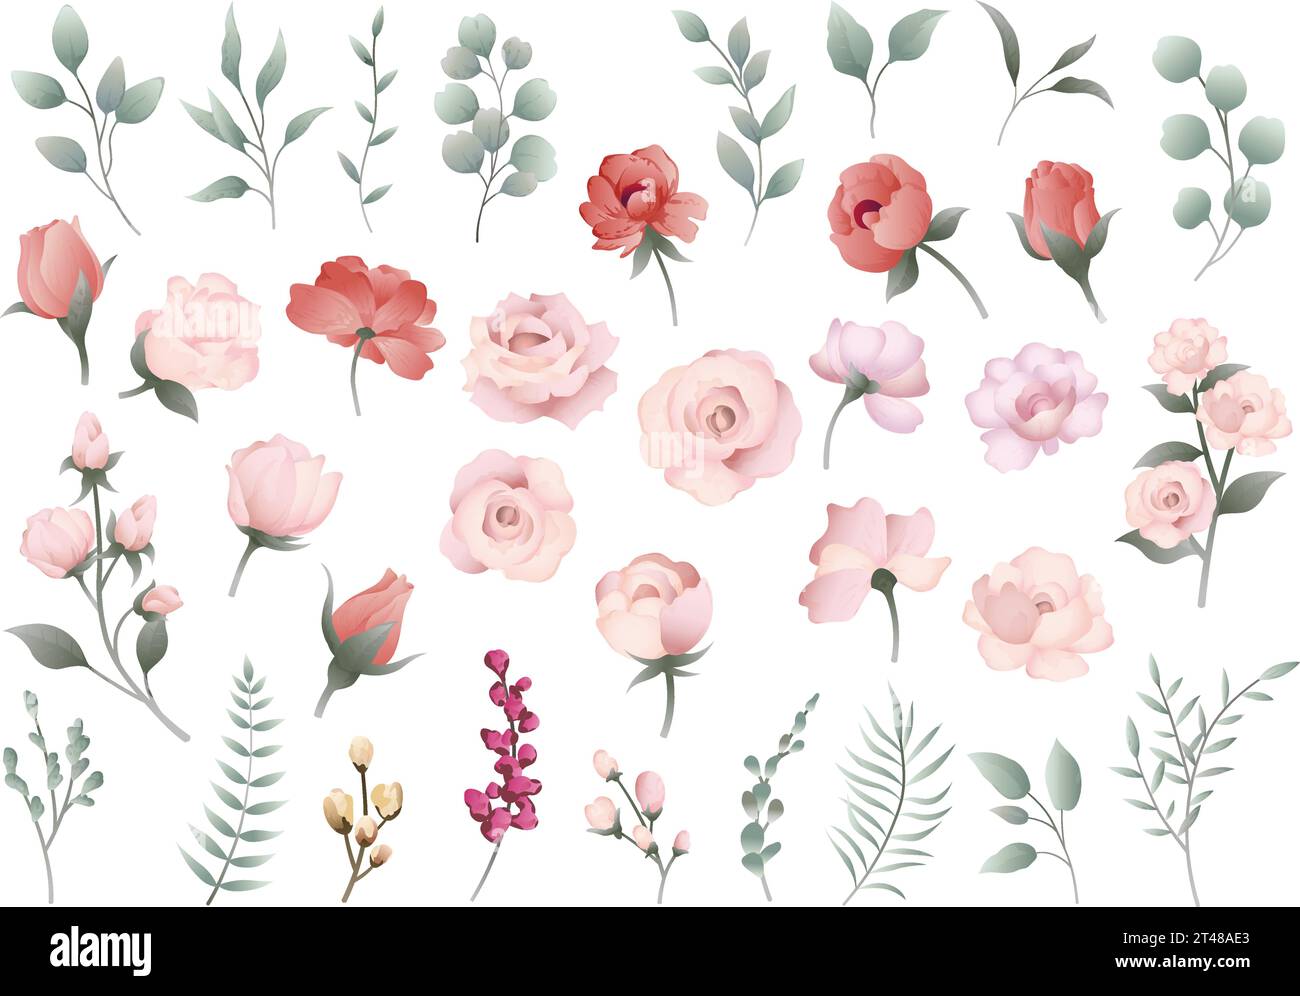 Vektor-Pastellfarbene Blume und Botanisches Element Illustration auf weißem Hintergrund isoliert. Stock Vektor